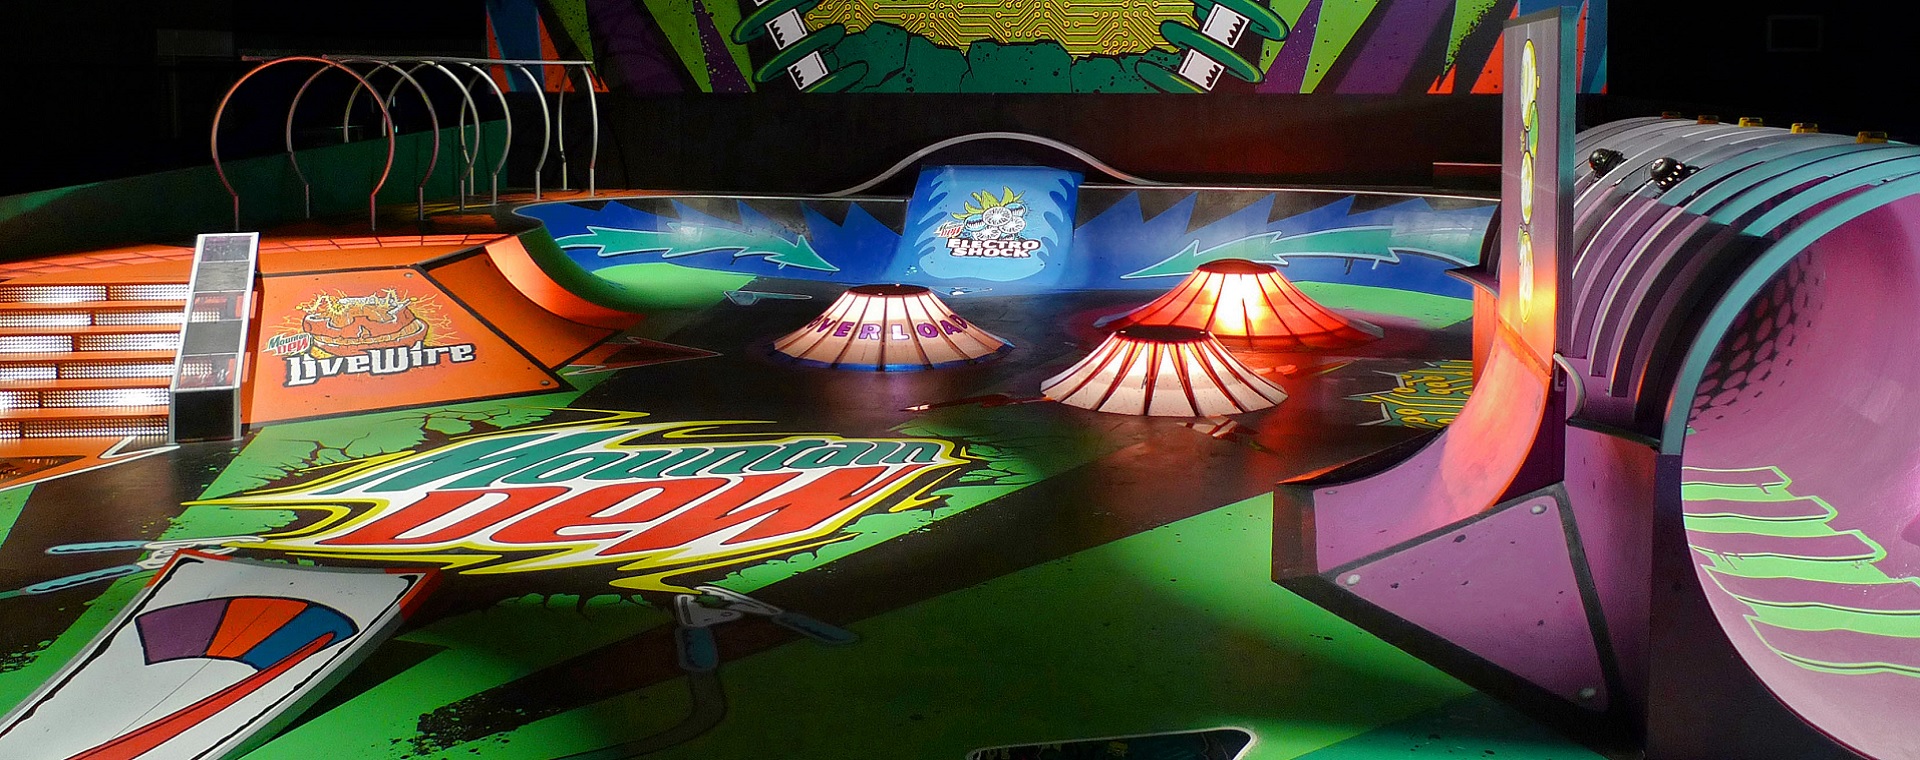 Mountain Dew Skate Park Giant Pinball Machine